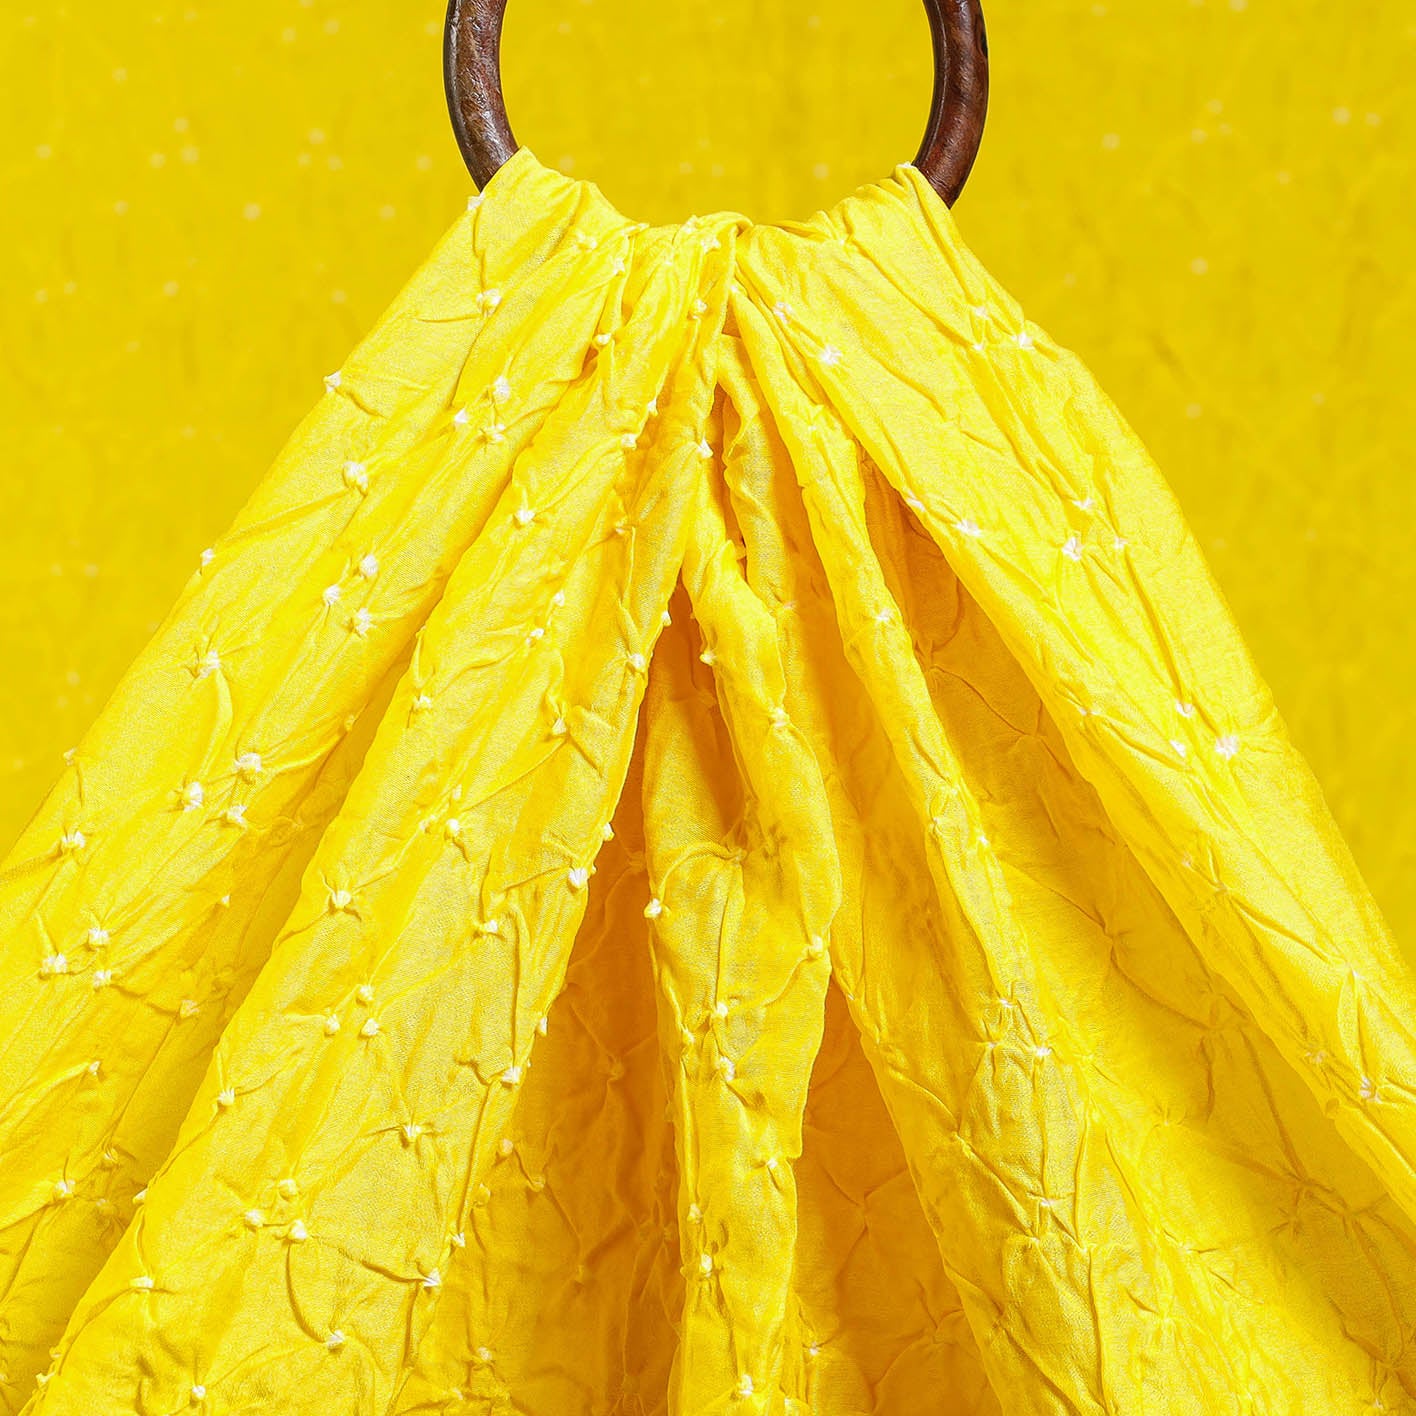 Sunshine Yellow Kutch Bandhani Tie-Dye Chanderi Silk Fabric